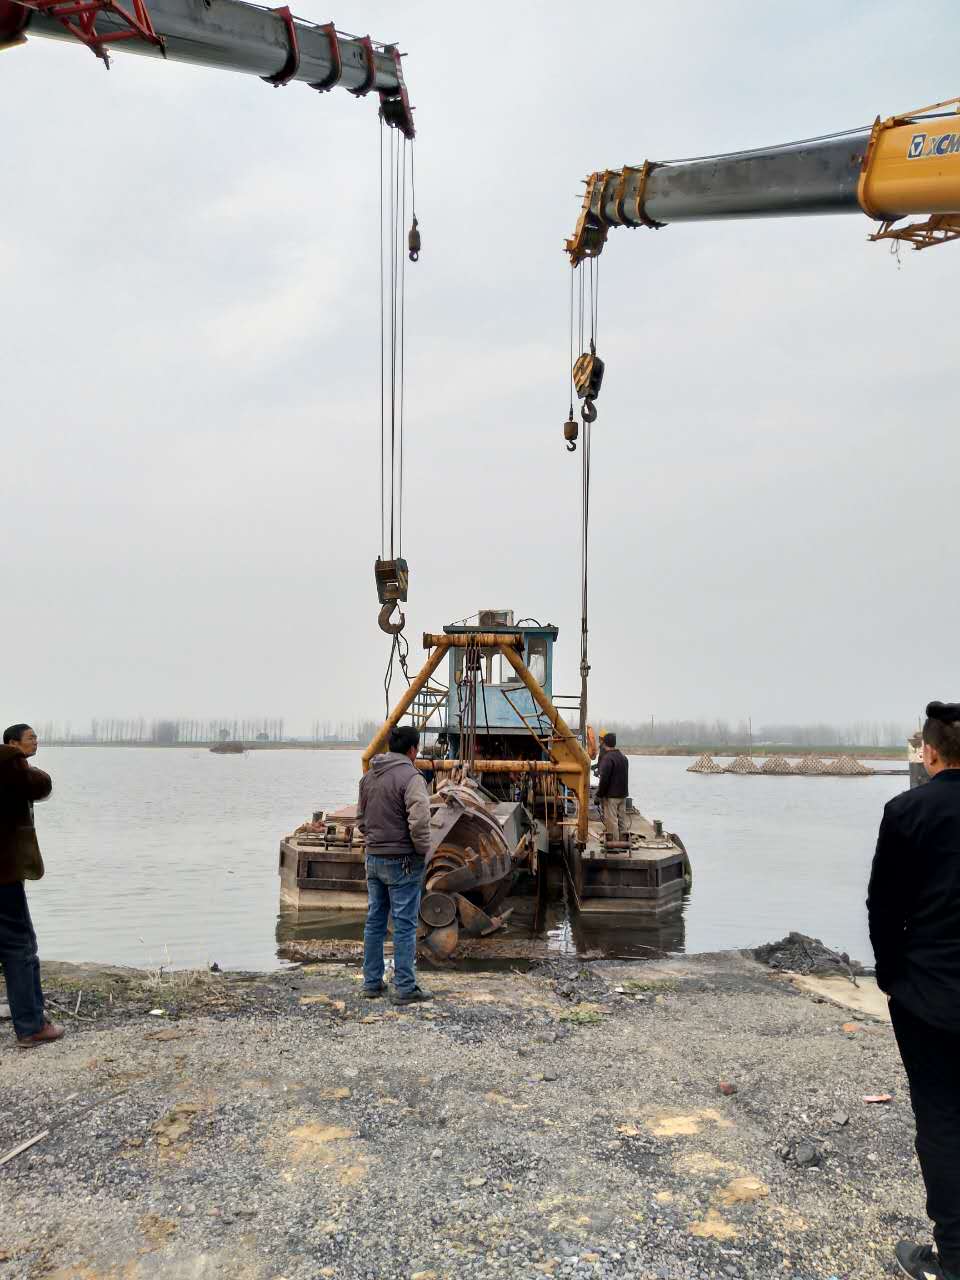 喀什巴楚县泥浆泵清淤_河道清淤施工方案联系电话